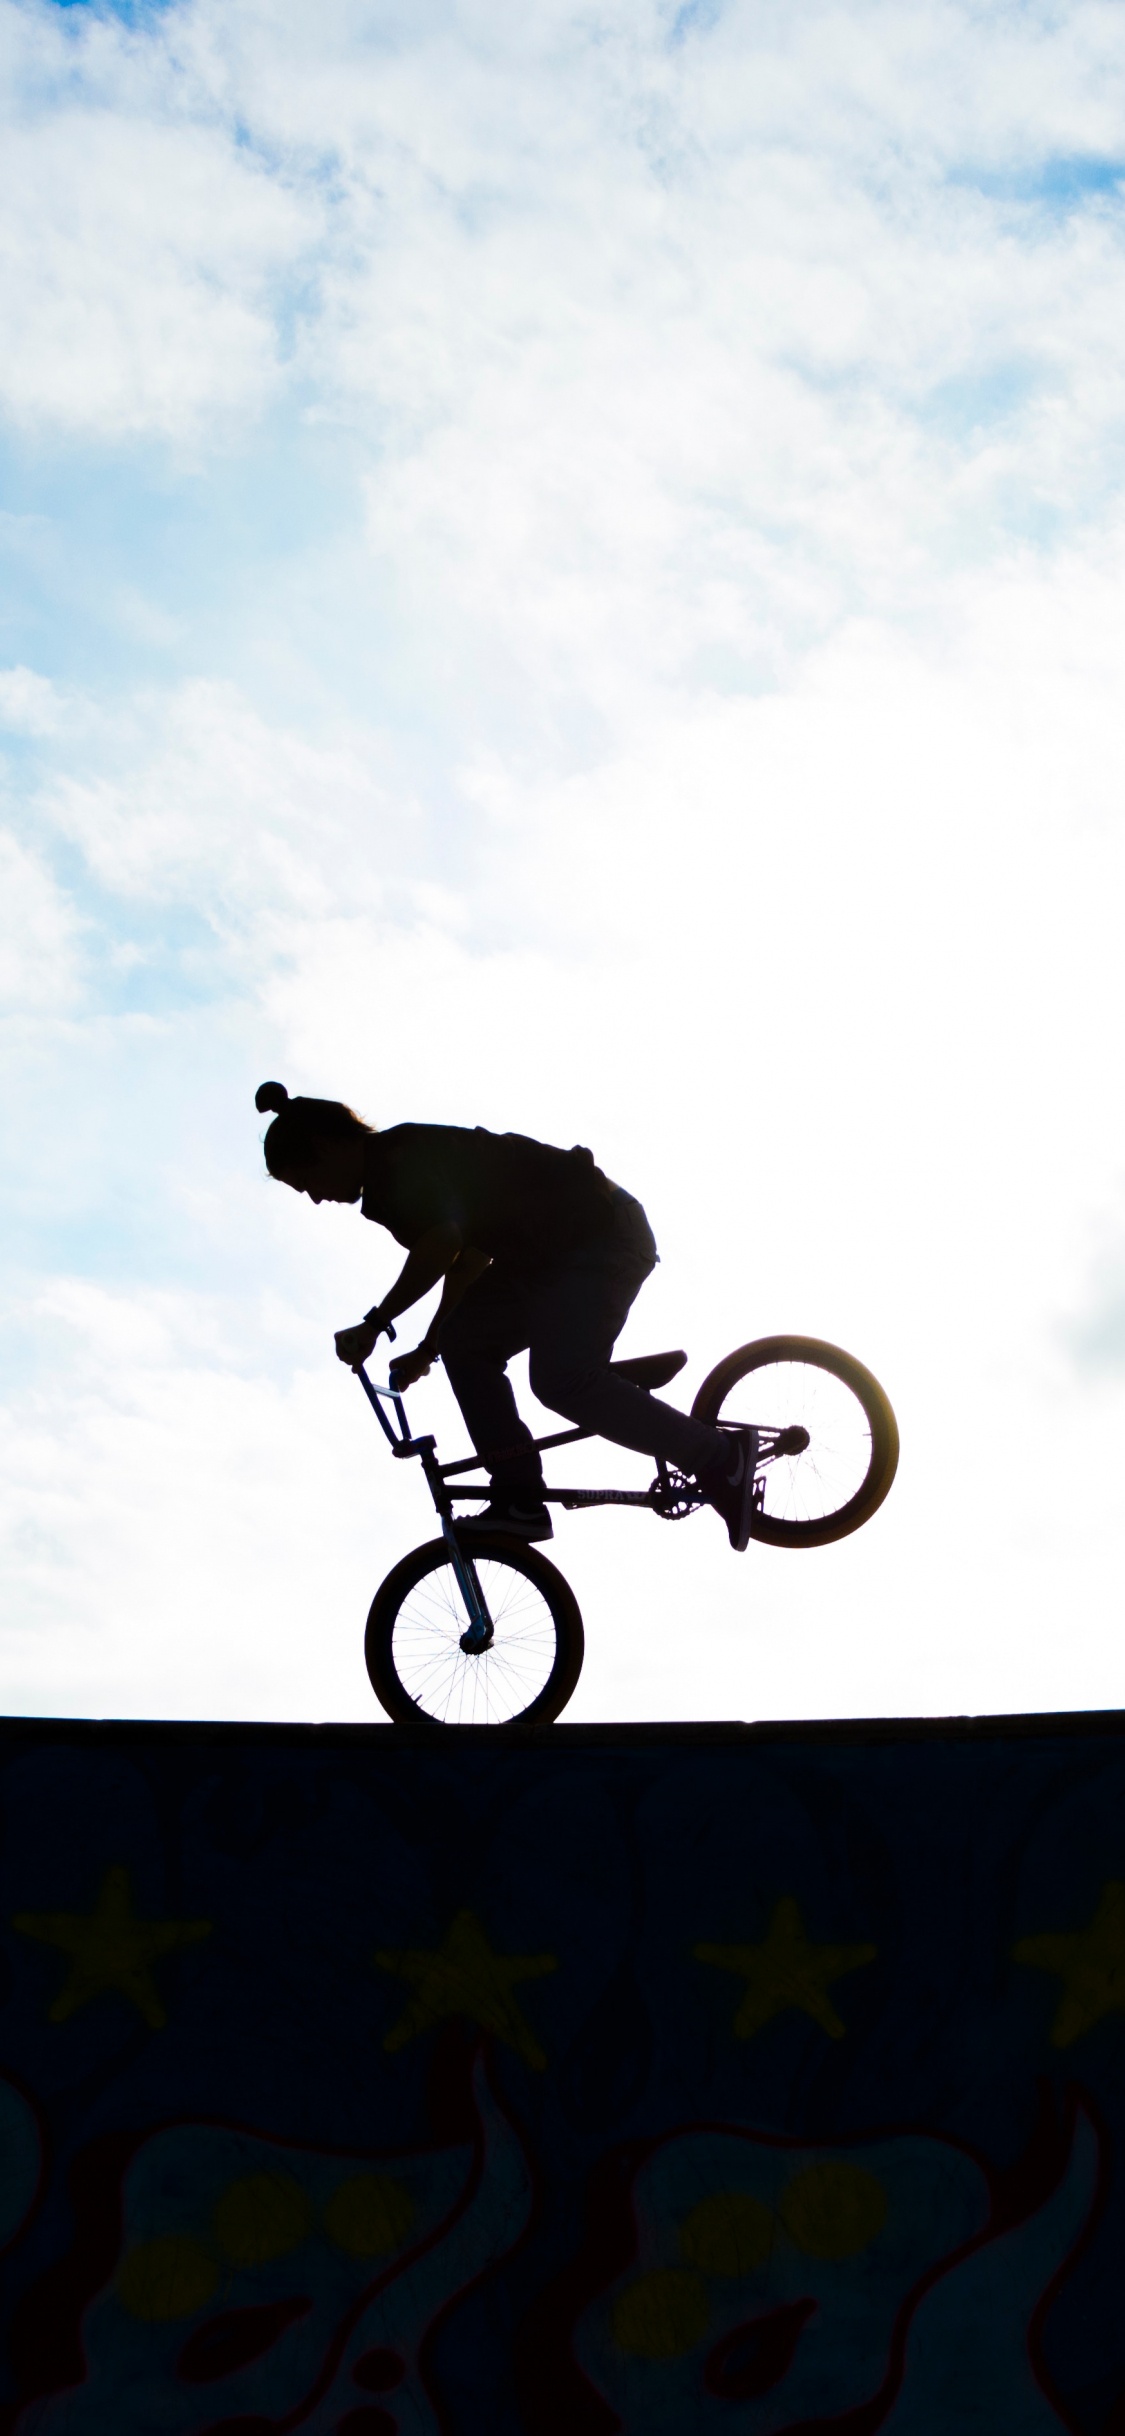 Man Riding Bicycle on Mid Air Sous Ciel Bleu Pendant la Journée. Wallpaper in 1125x2436 Resolution